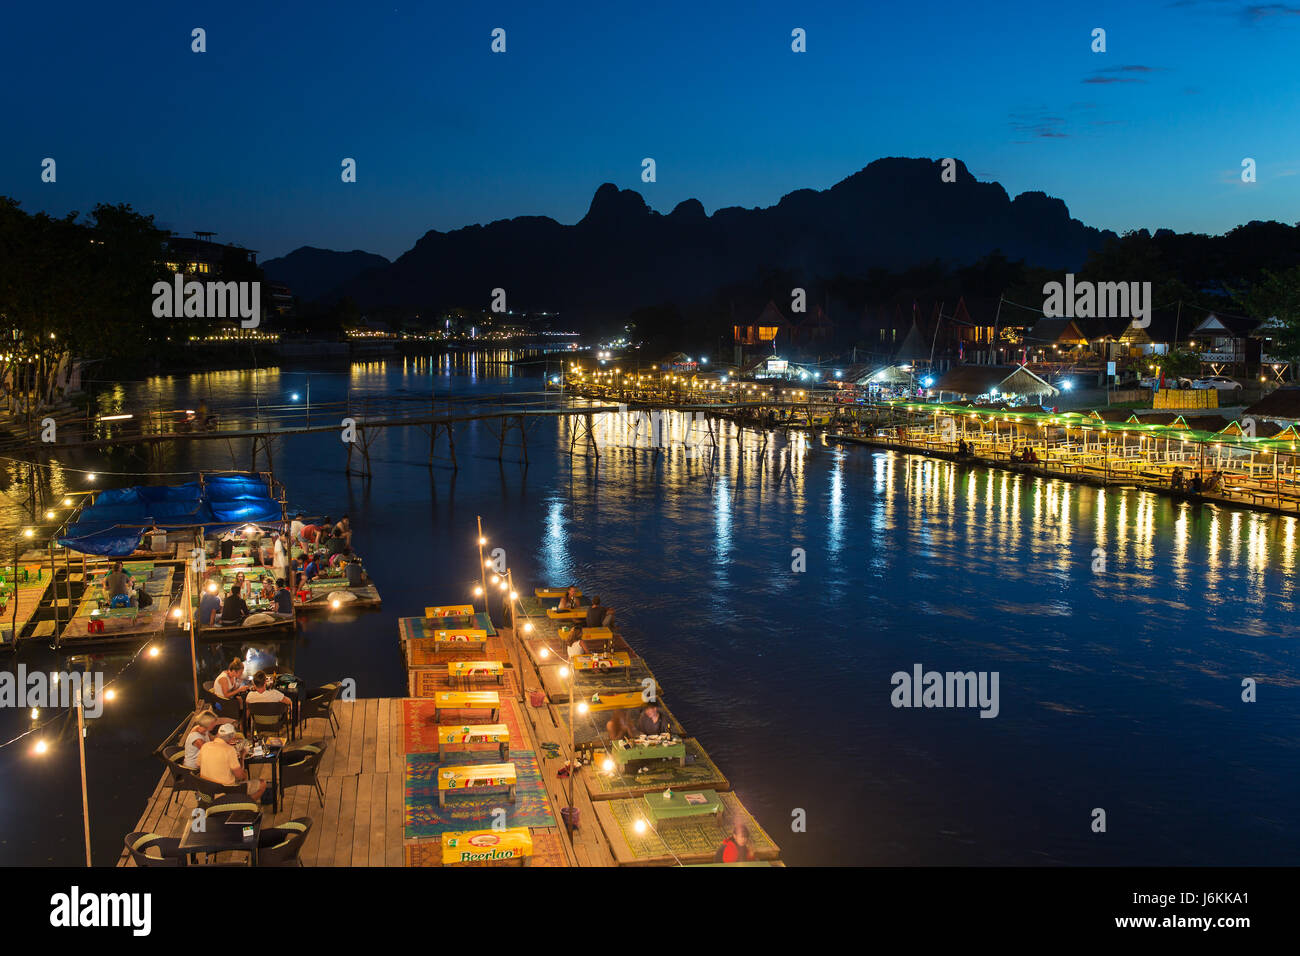 Vang Vieng, Laos - January 19, 2017: Restaurant on the riverfront at night in Vang Vieng, Laos Stock Photo